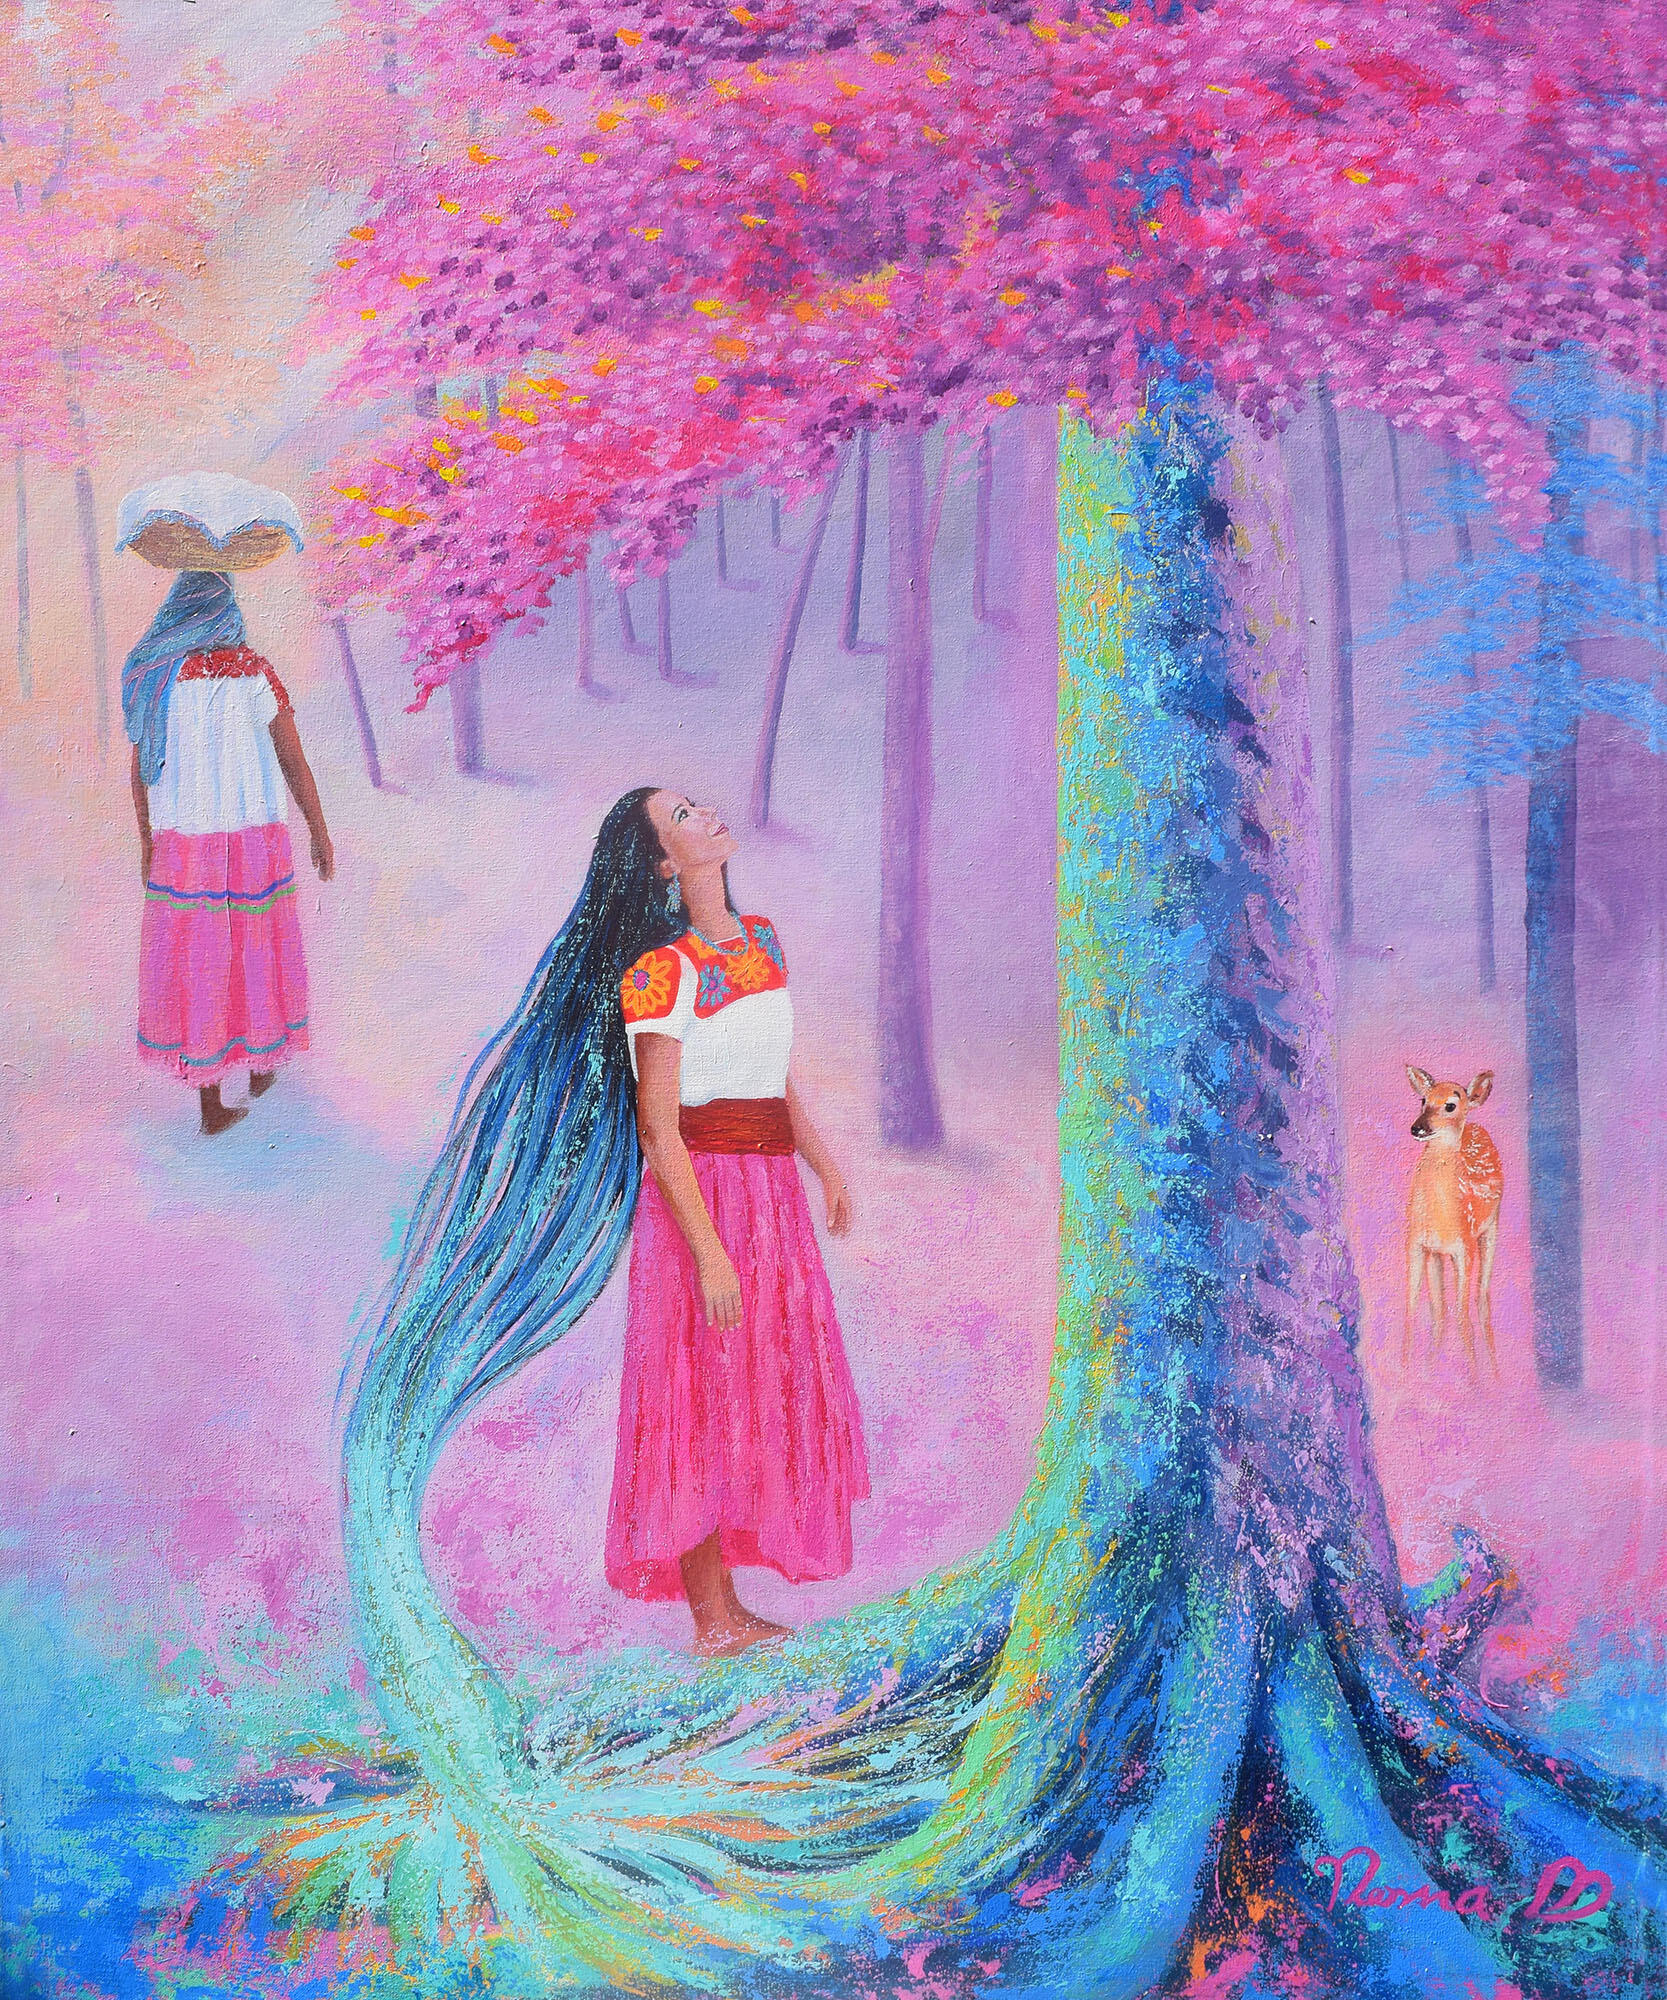 Norma Martínez. (2018). Icniuhtlan (Amistad). [Acrílico en óleo, 100 cm x 80 cm]. (Imagen cortesía de la artista.)